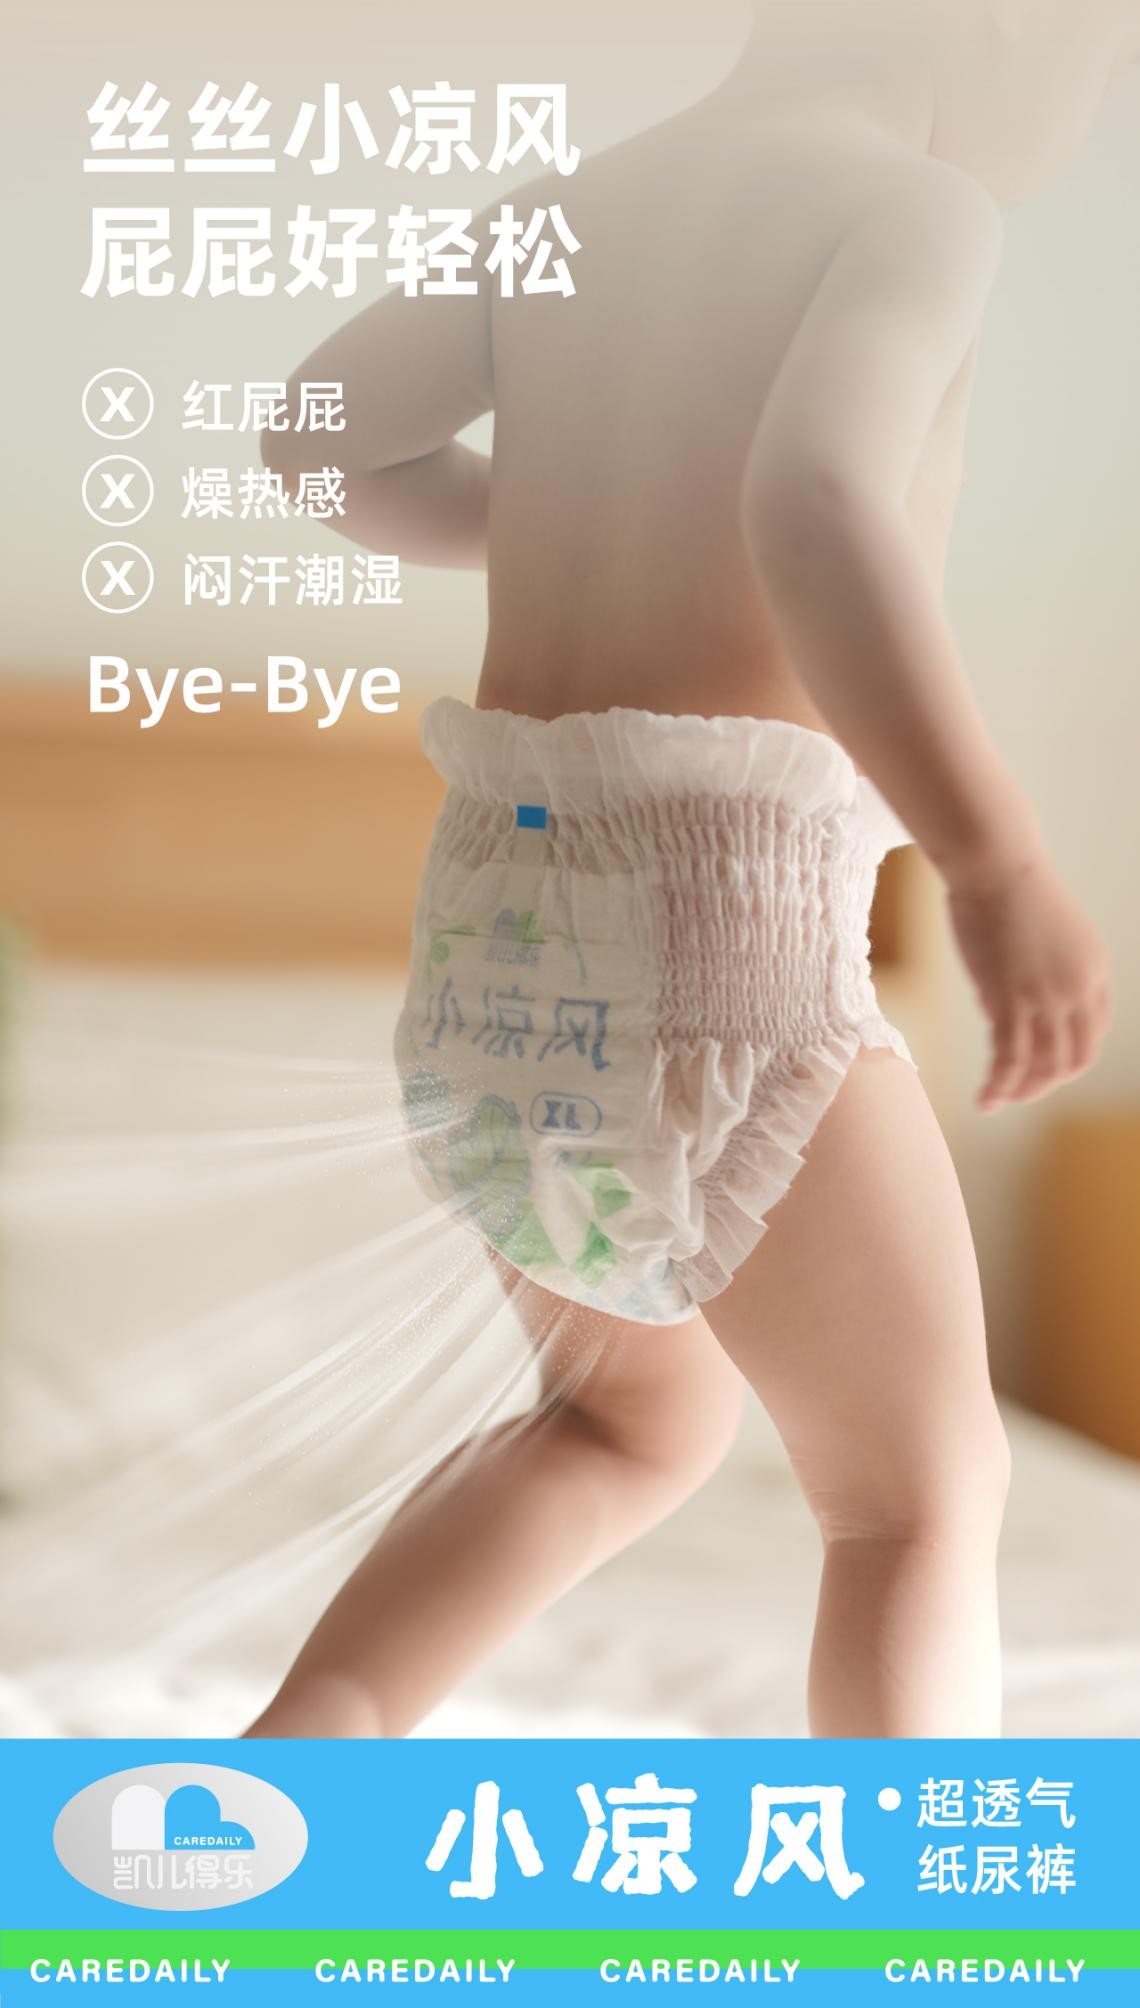 凯儿得乐小凉风系列纸尿裤正式上市，引多平台围观